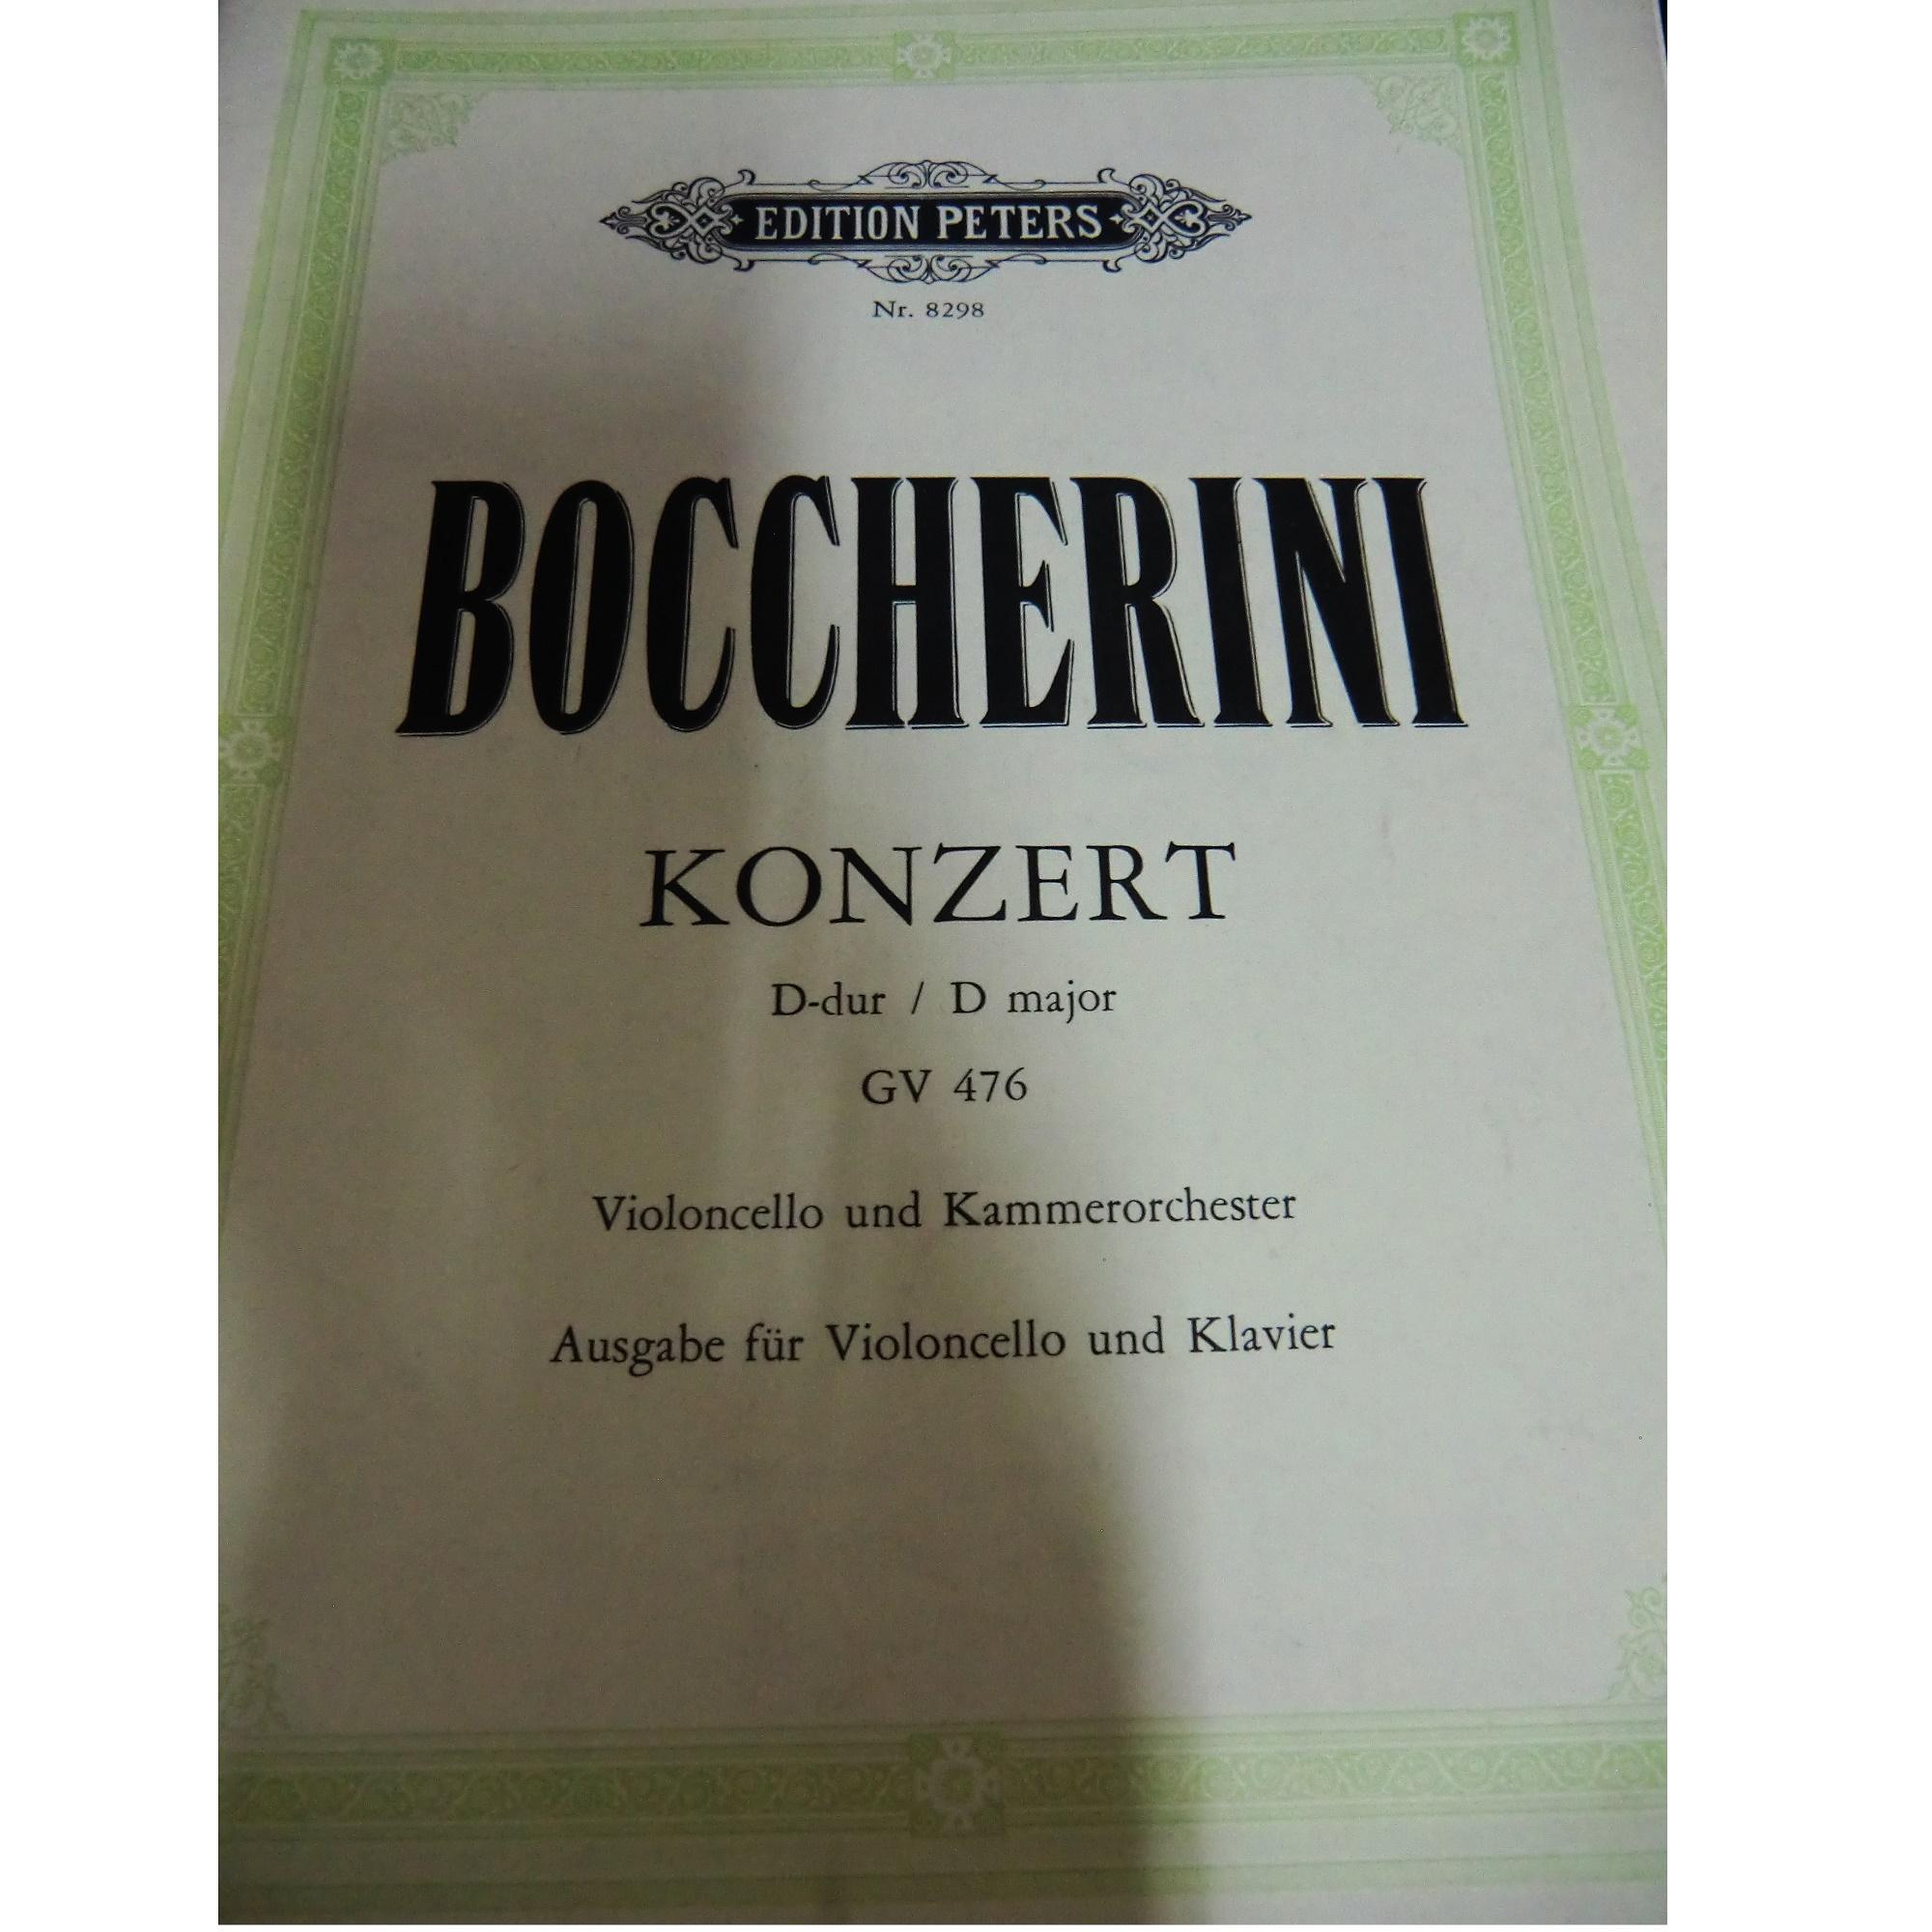 Boccherini Konzert D-dur / D major GV 476 Violoncello und Kammerorchester - Edition Peters 